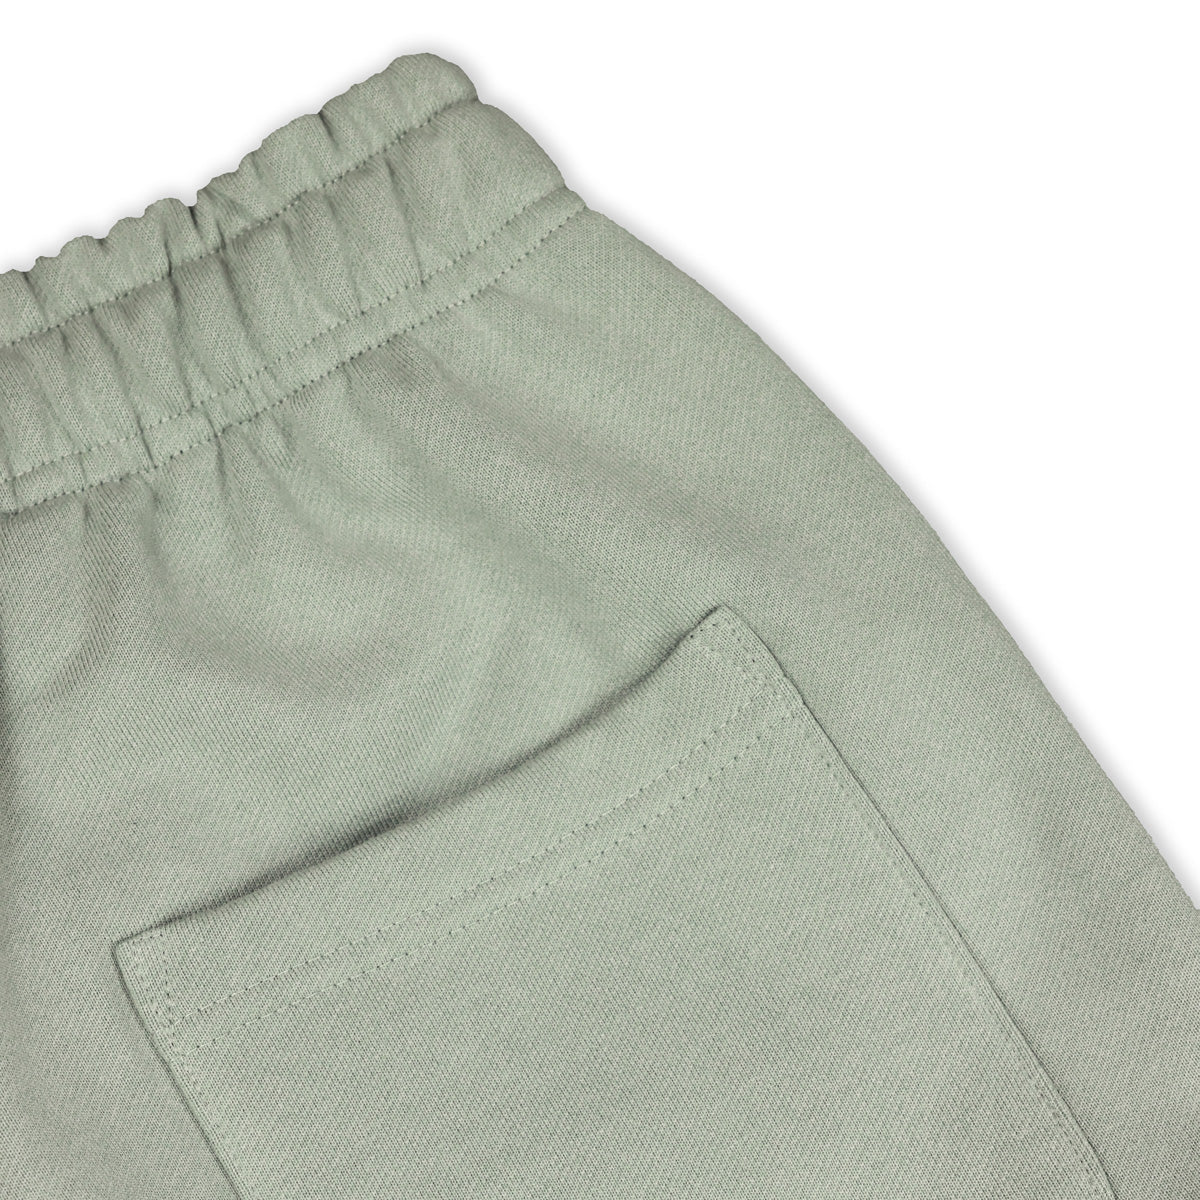 Marathon Modern Sweatpants - Sage/Black - Back Pocket